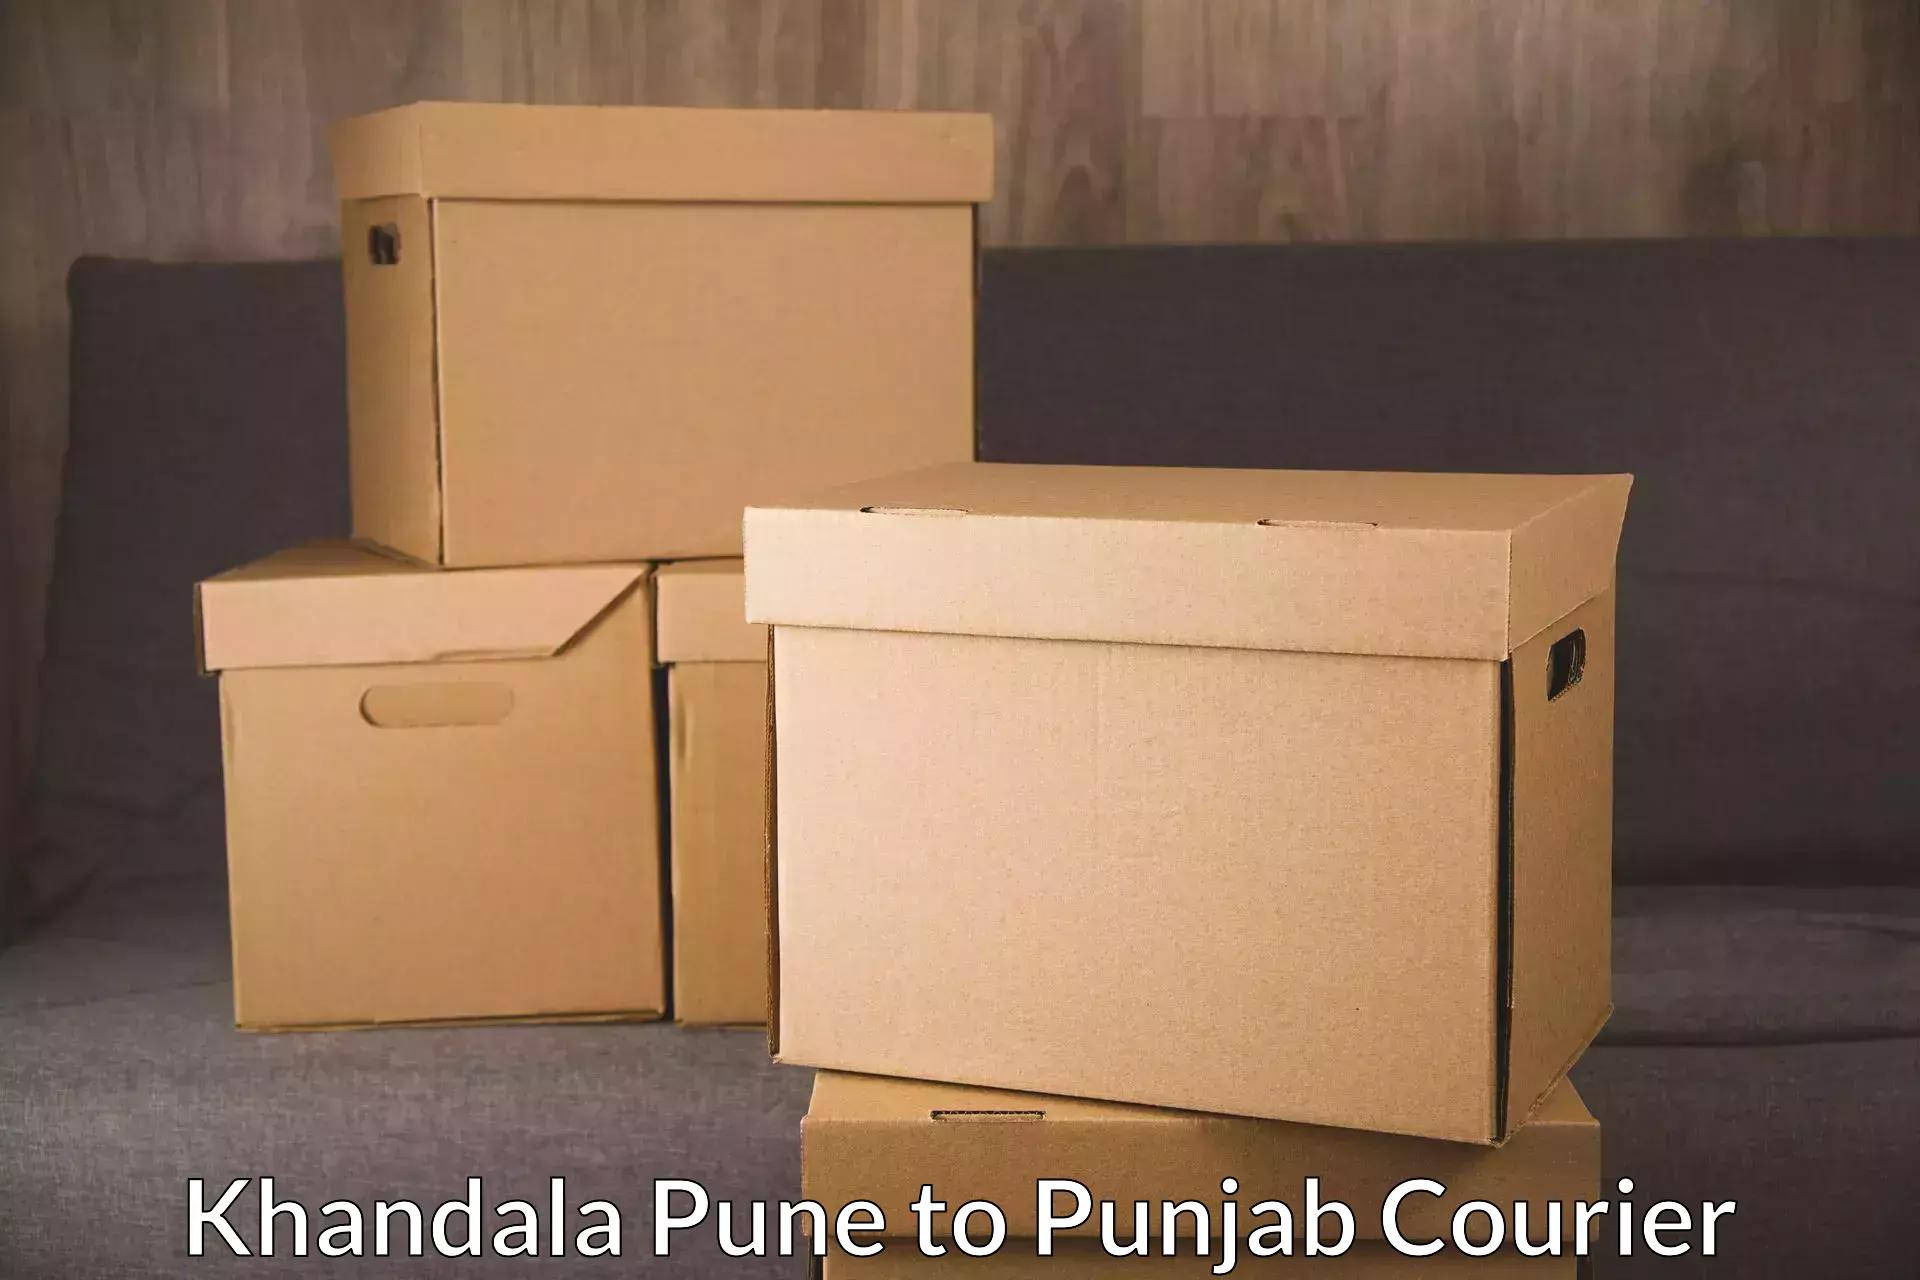 Parcel service for businesses Khandala Pune to Tarsikka